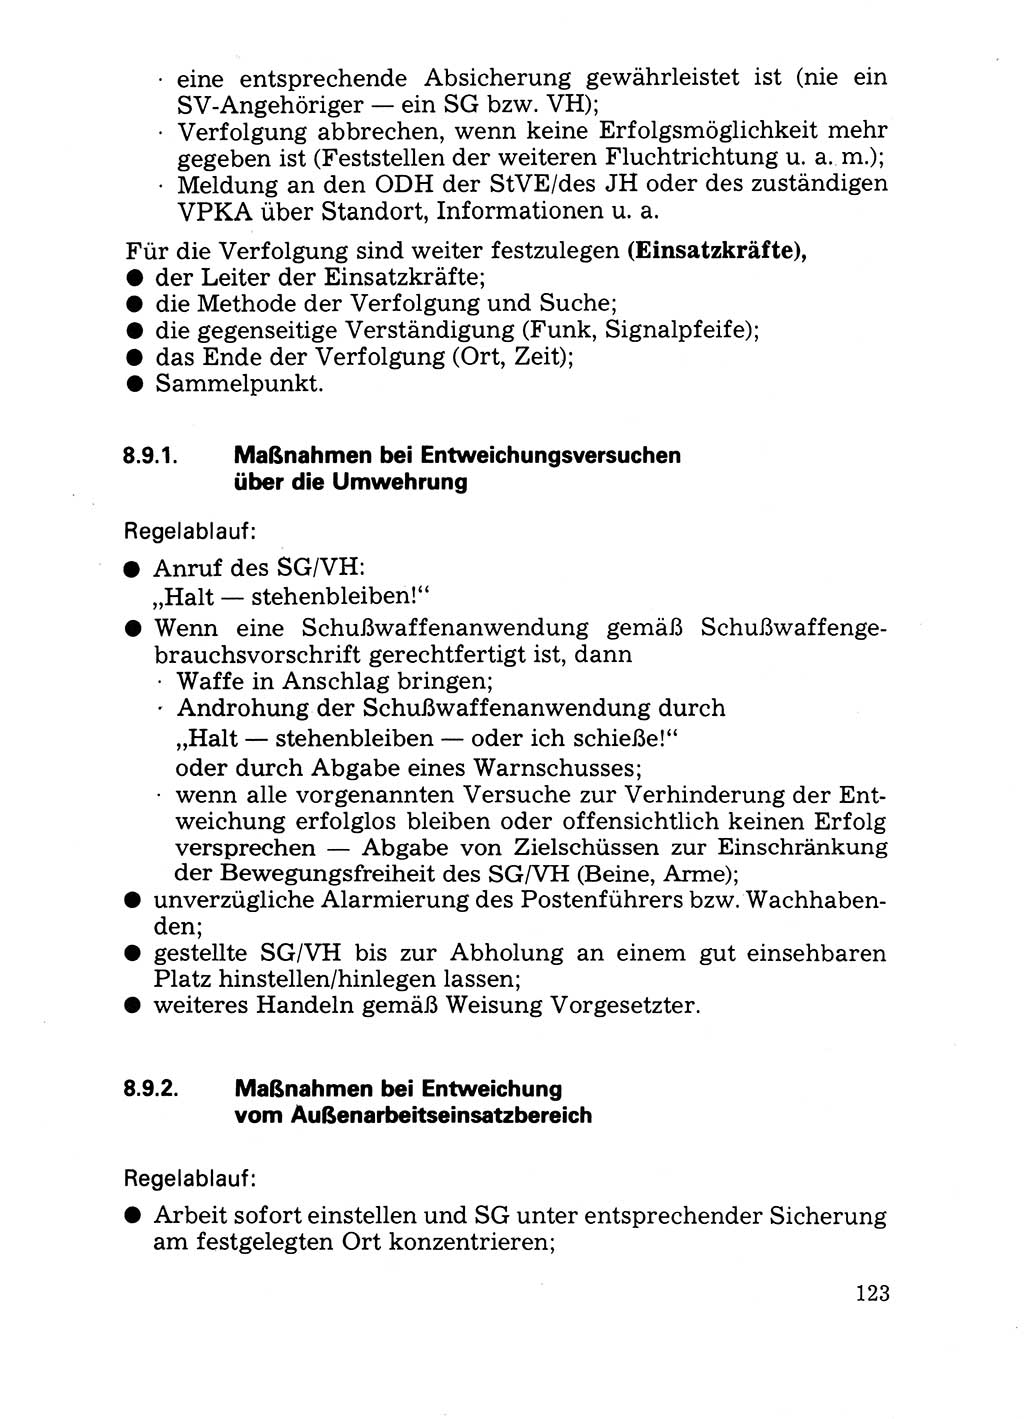 Handbuch für operative Dienste, Abteilung Strafvollzug (SV) [Ministerium des Innern (MdI) Deutsche Demokratische Republik (DDR)] 1981, Seite 123 (Hb. op. D. Abt. SV MdI DDR 1981, S. 123)